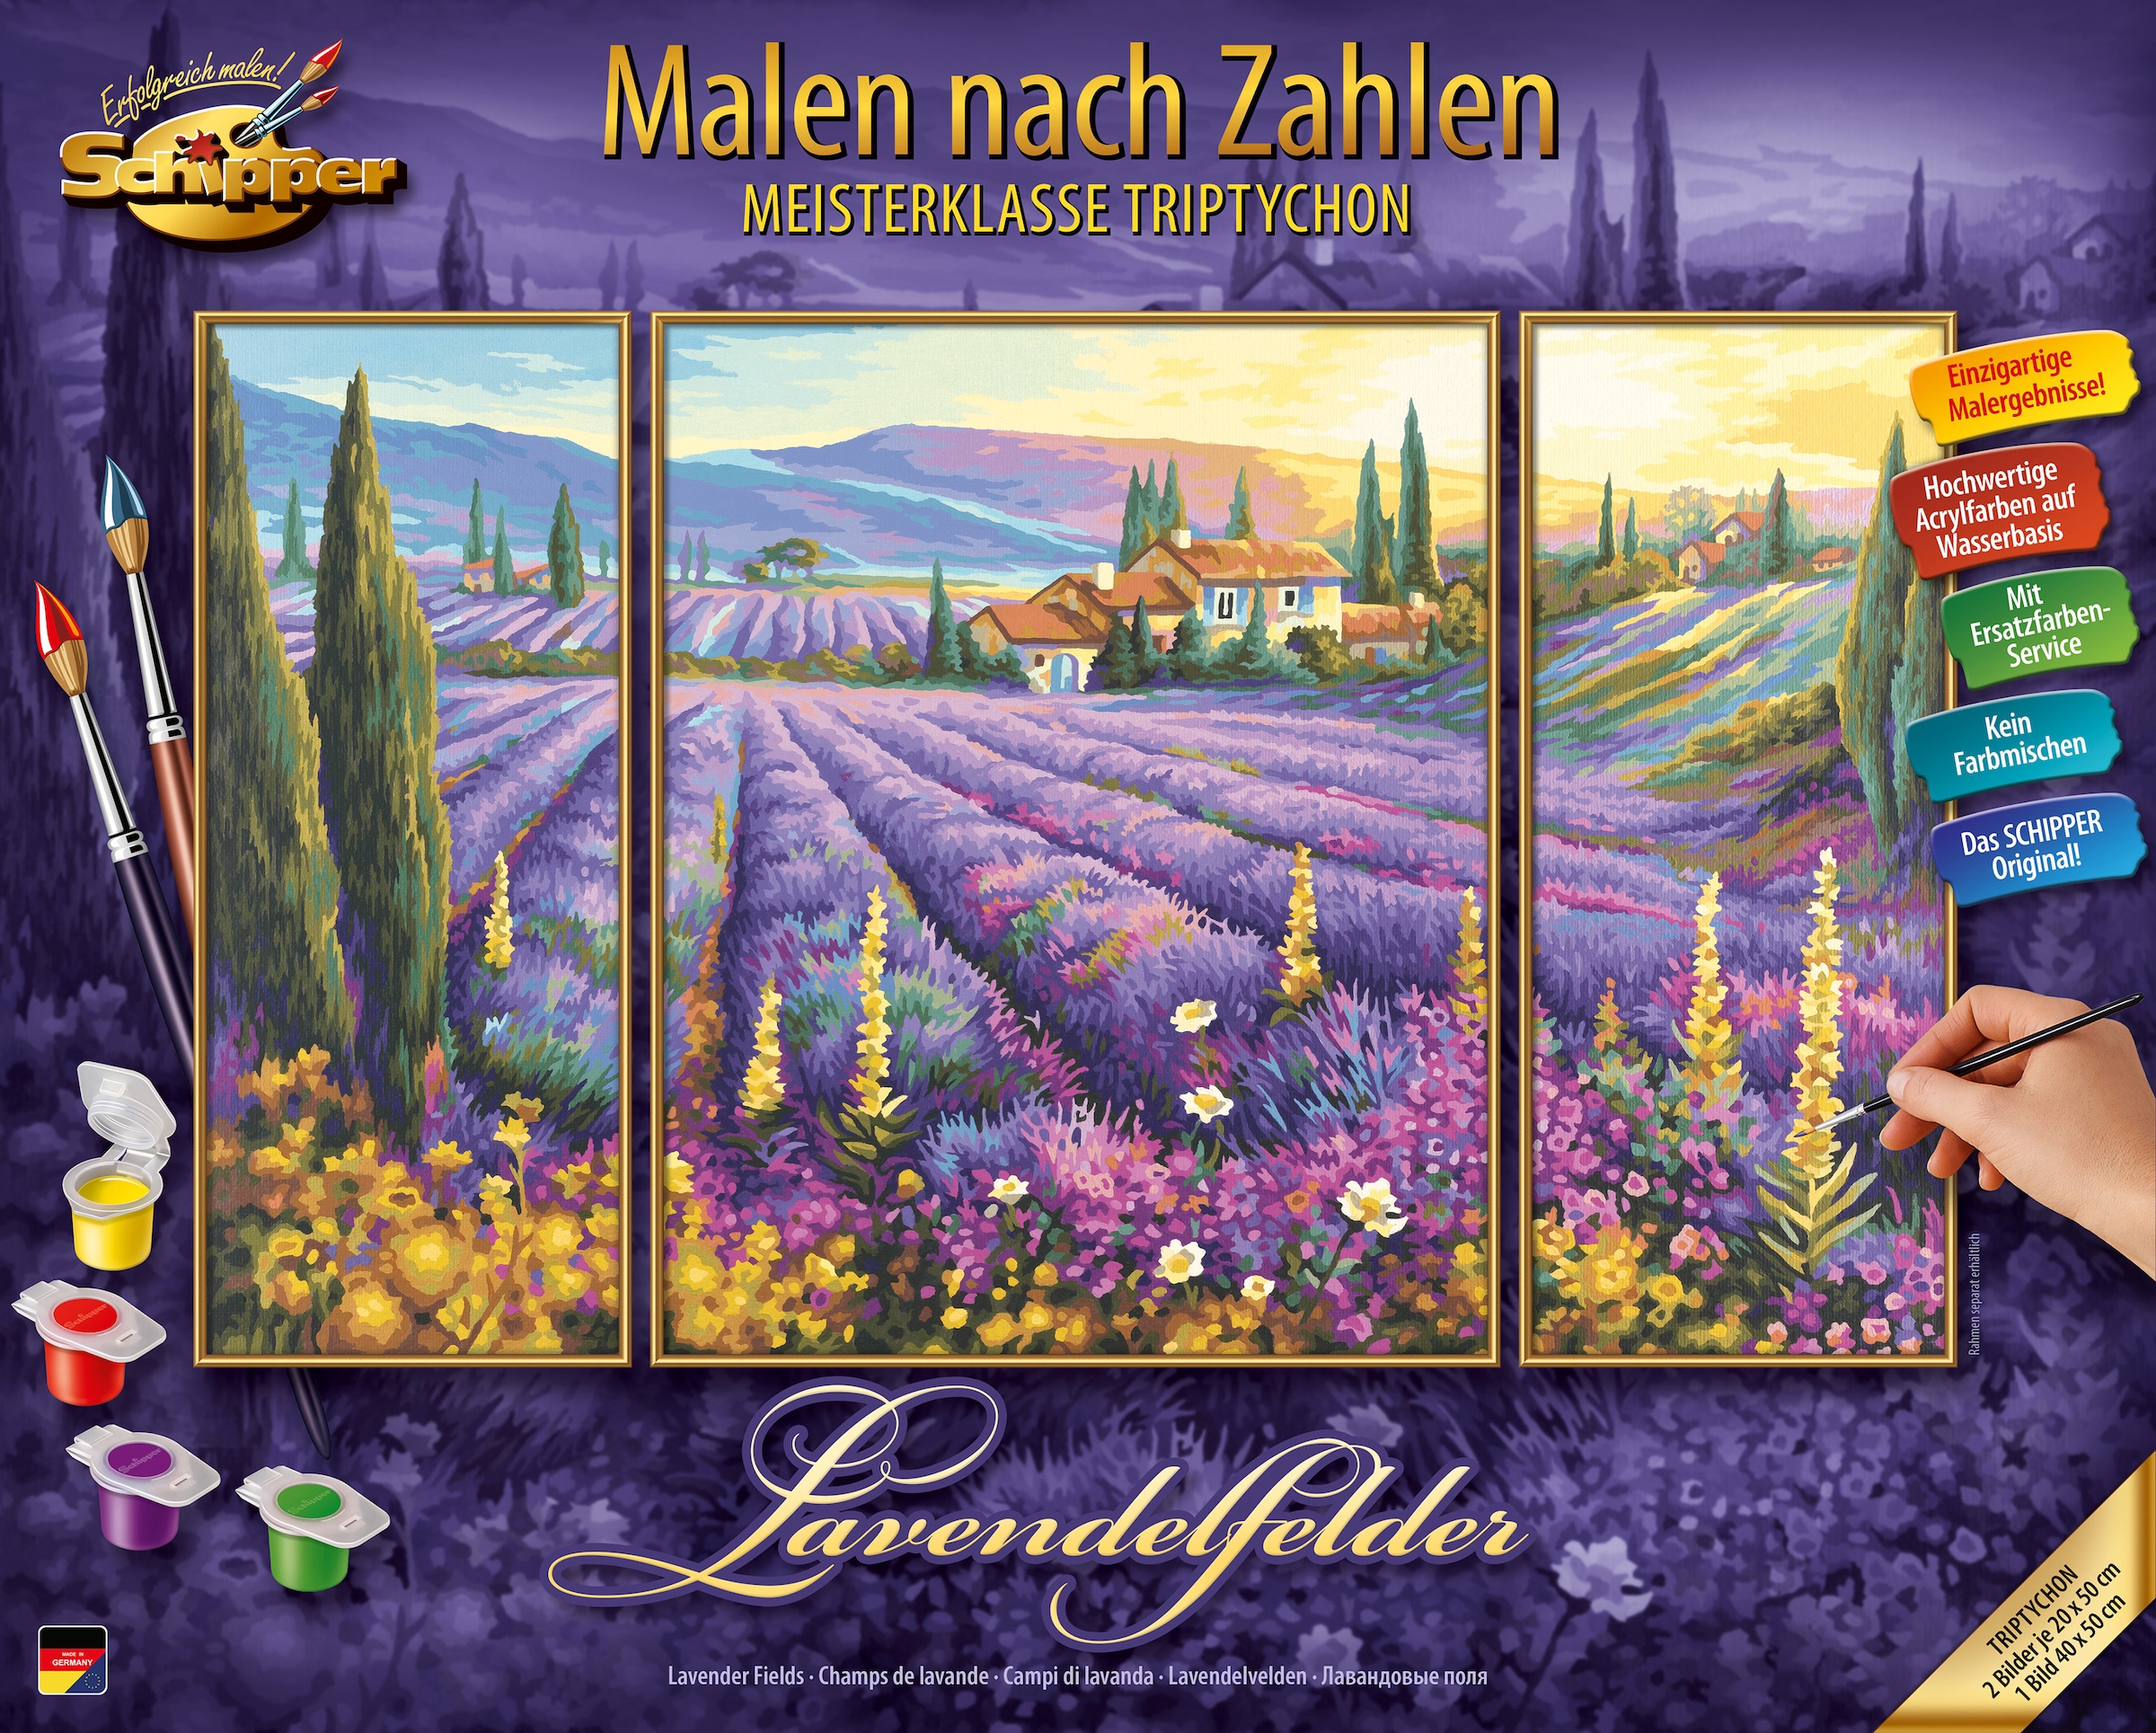 - »Meisterklasse in Made Zahlen | nach Triptychon Schipper Malen BAUR Lavendelfelder«, Germany